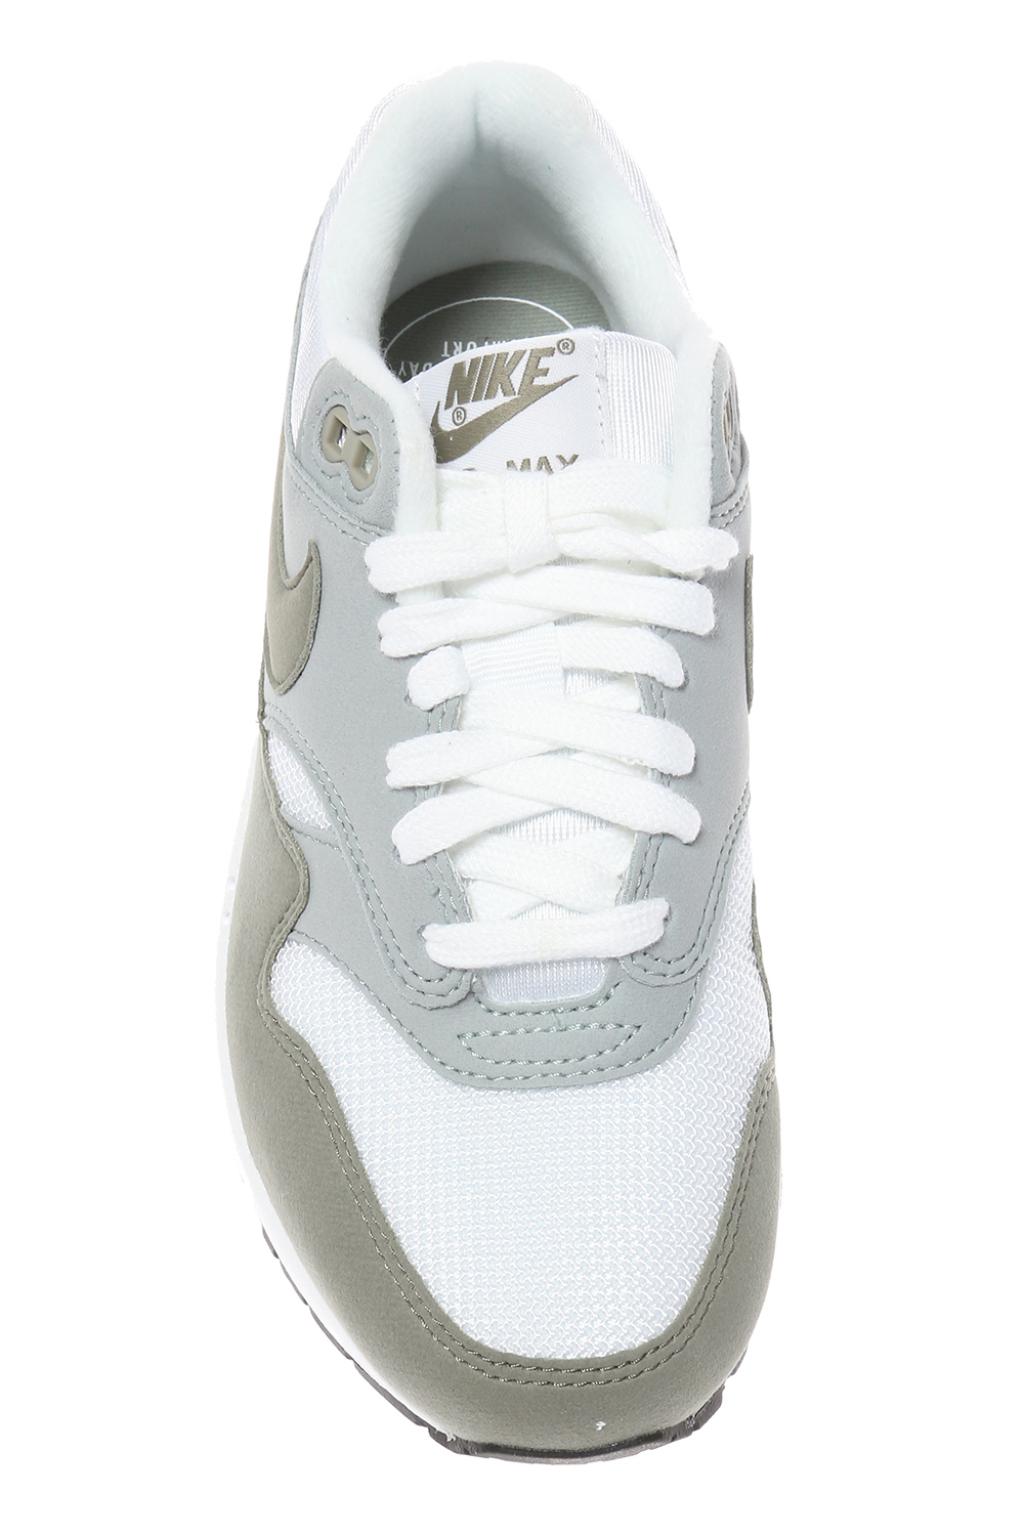 Nike Women's Air Max 1 White/Dark Stucco-Light Pumice - 319986-105